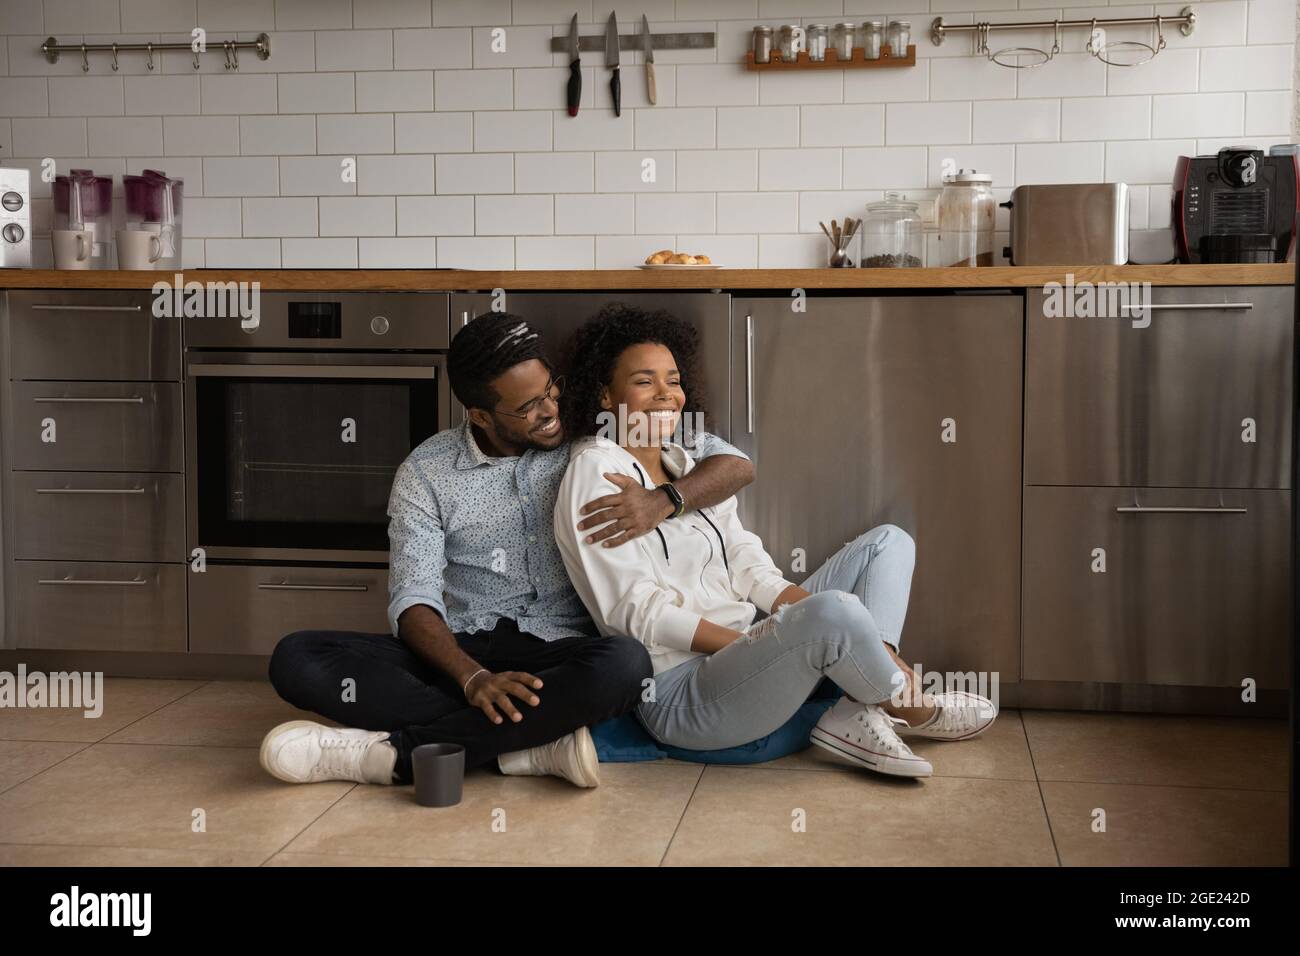 La coppia millenaria africana si siede sul pavimento in cucina Foto Stock